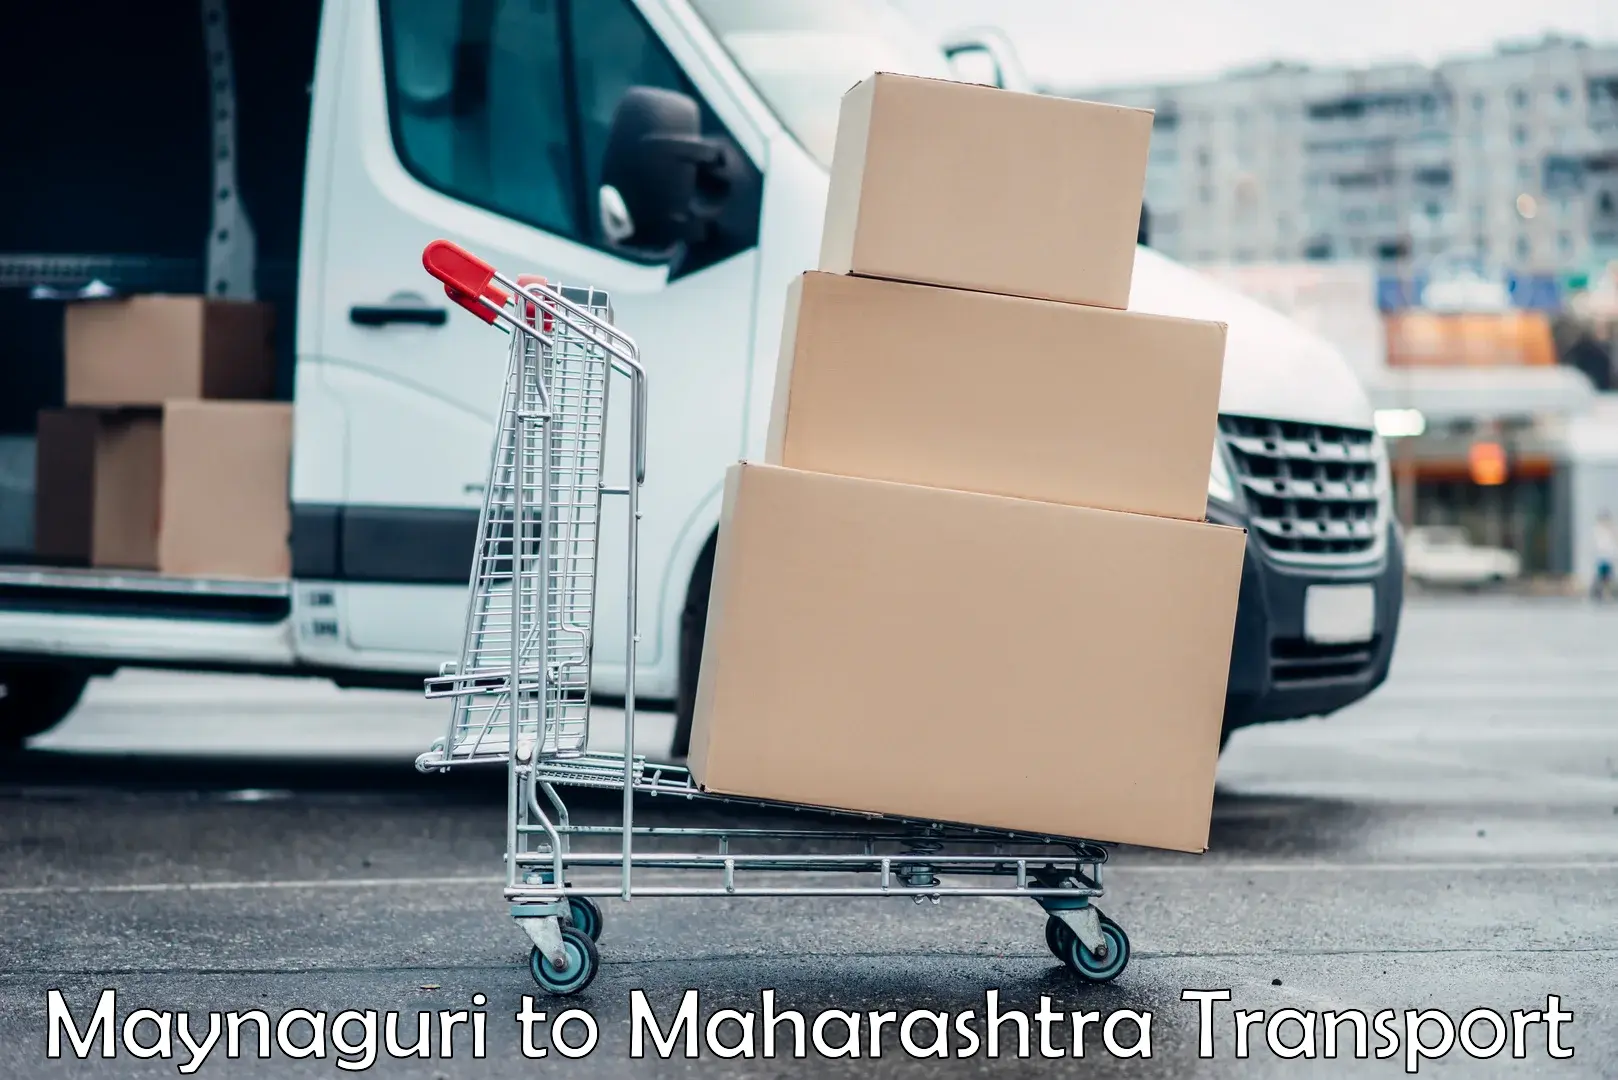 Cycle transportation service Maynaguri to Maharashtra